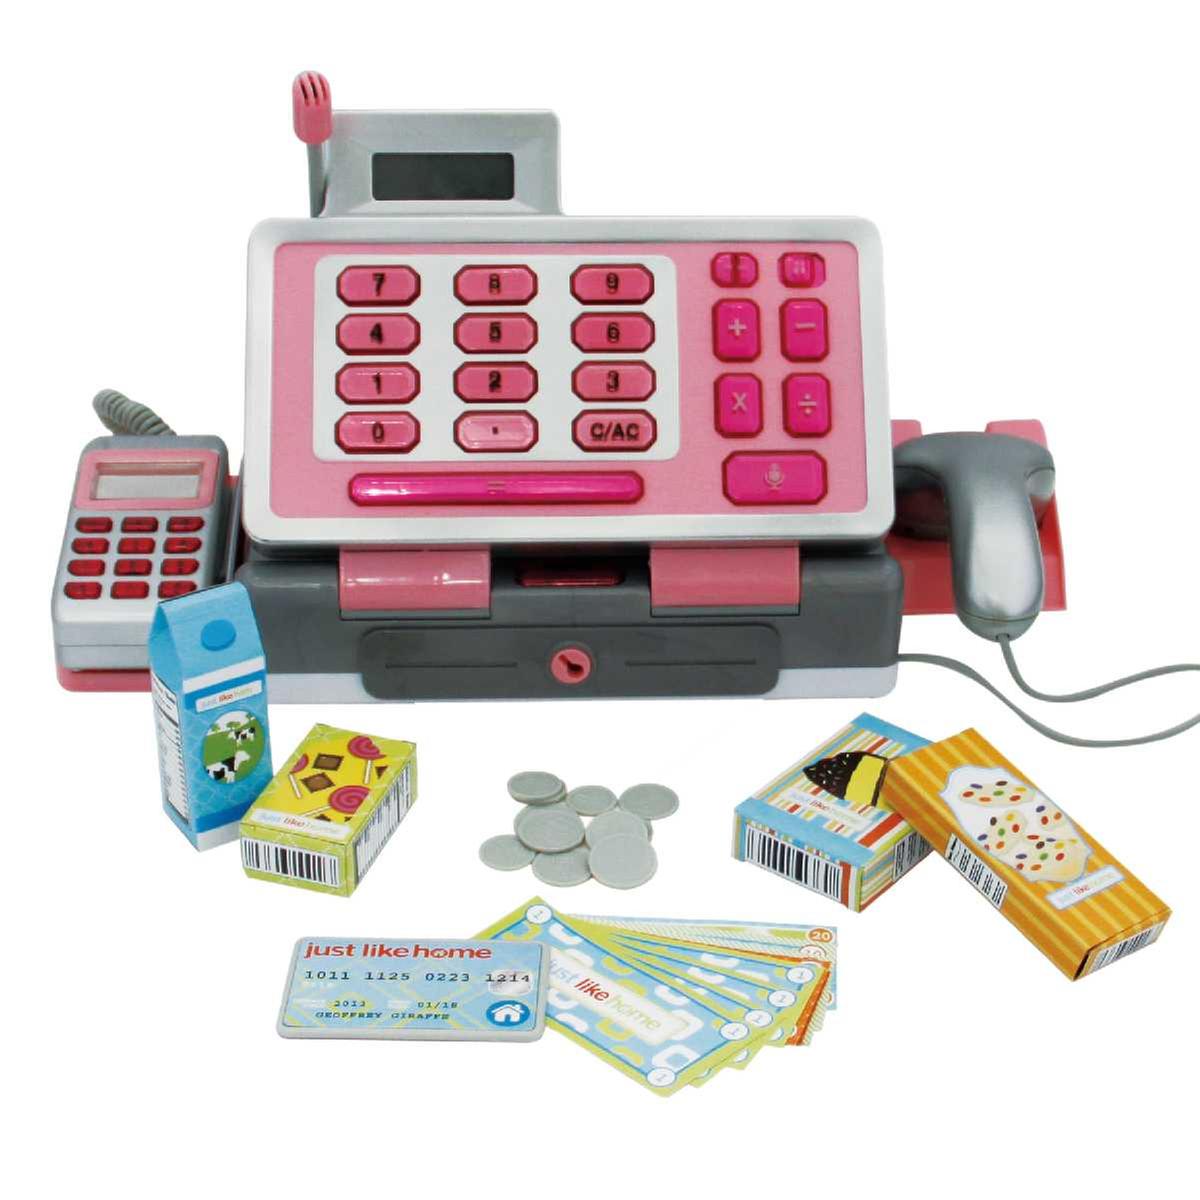 Caja registradora con calculadora real, escáner, micrófono, dinero y